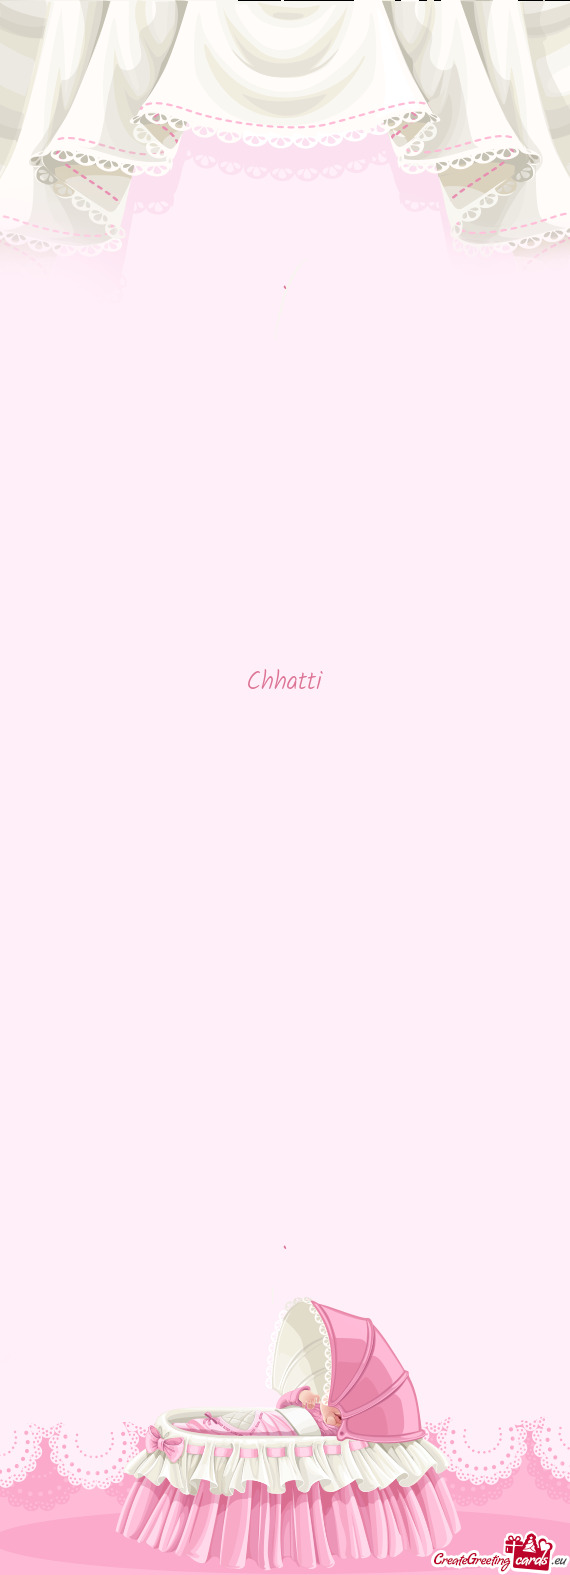 Chhatti